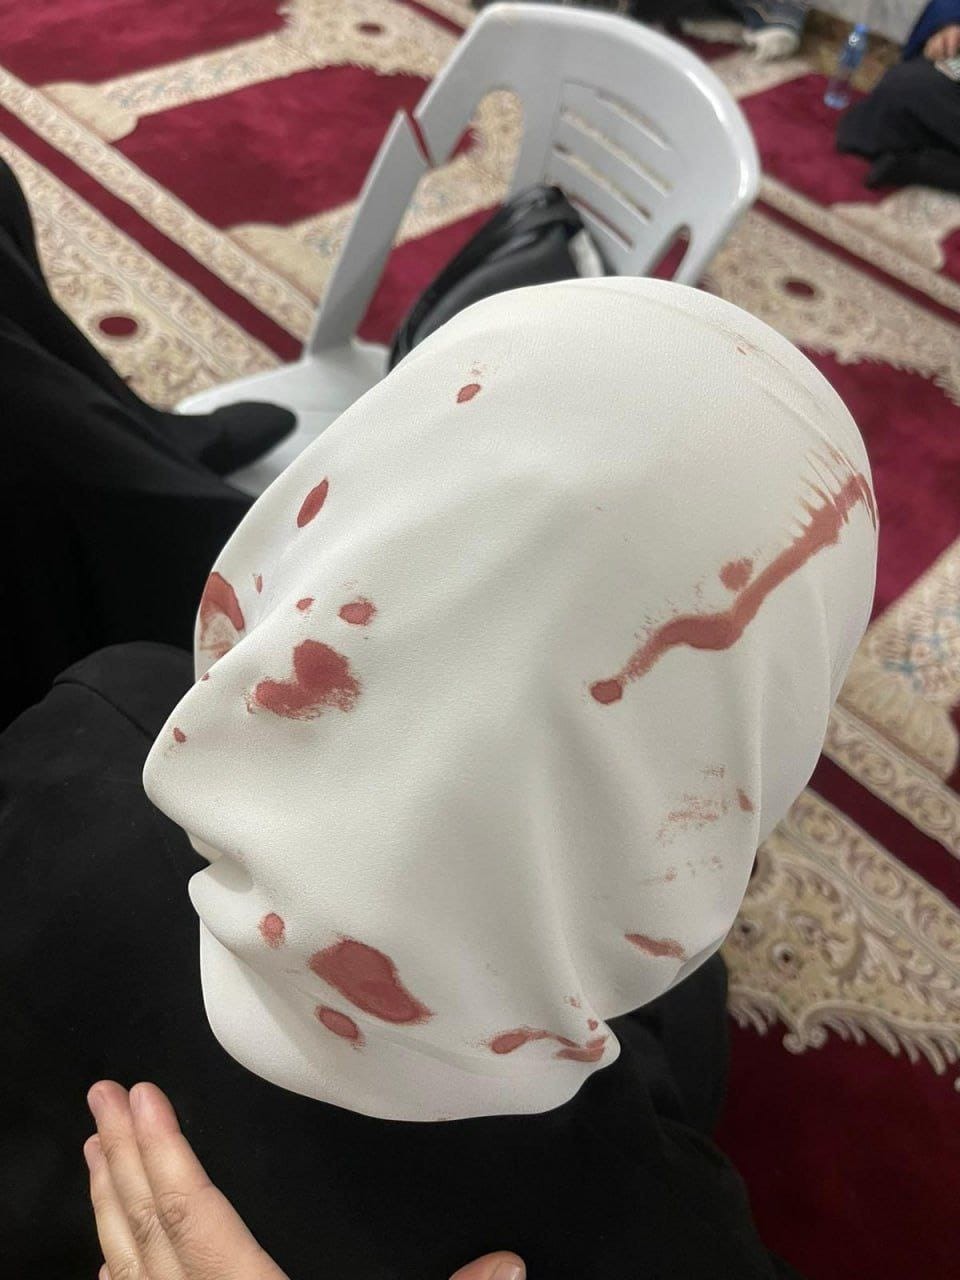 إصابة سيدة في المسجد الأقصى اليوم